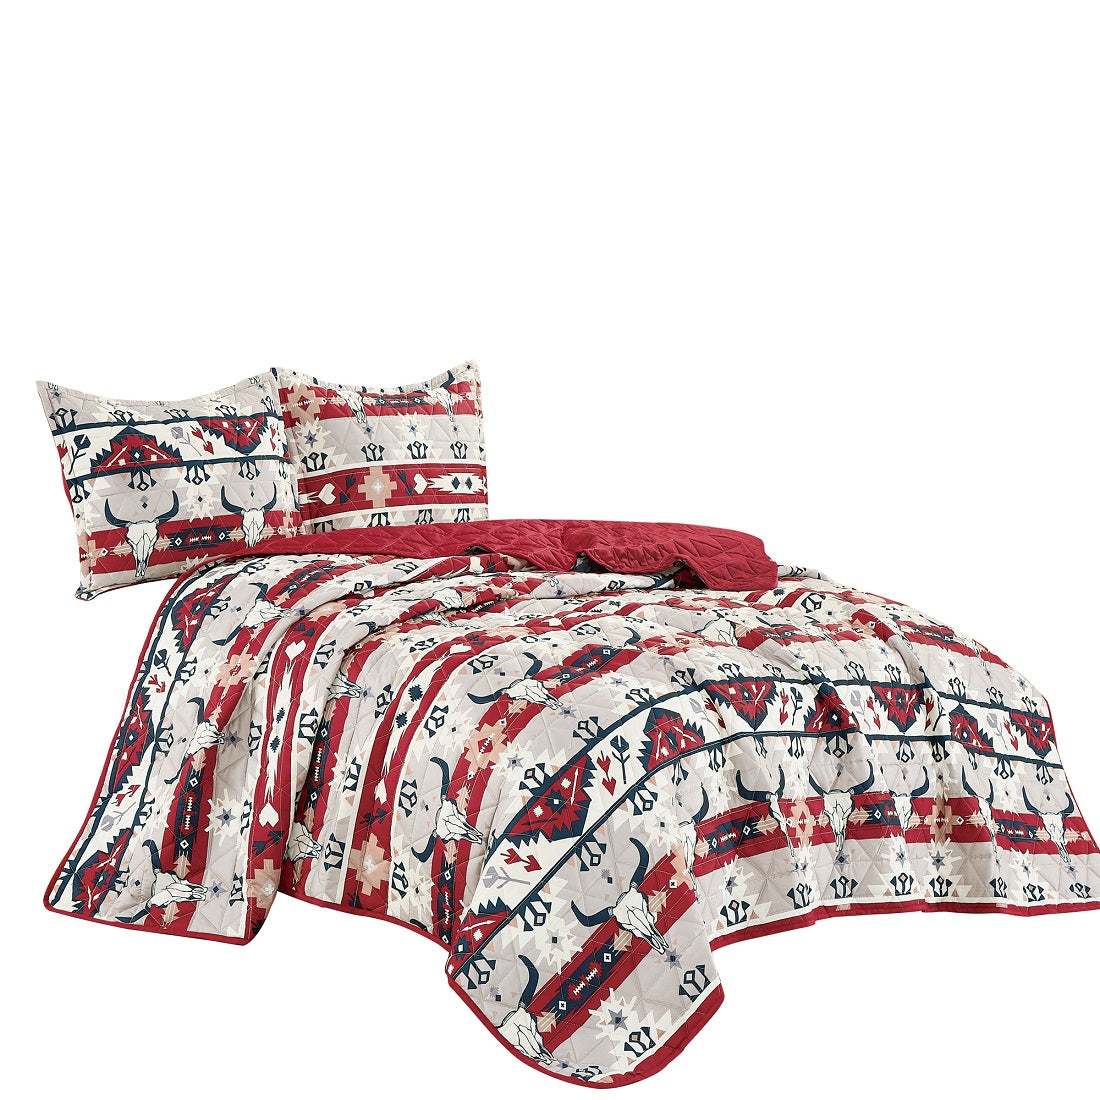 Mazhira 3 piece bedspread